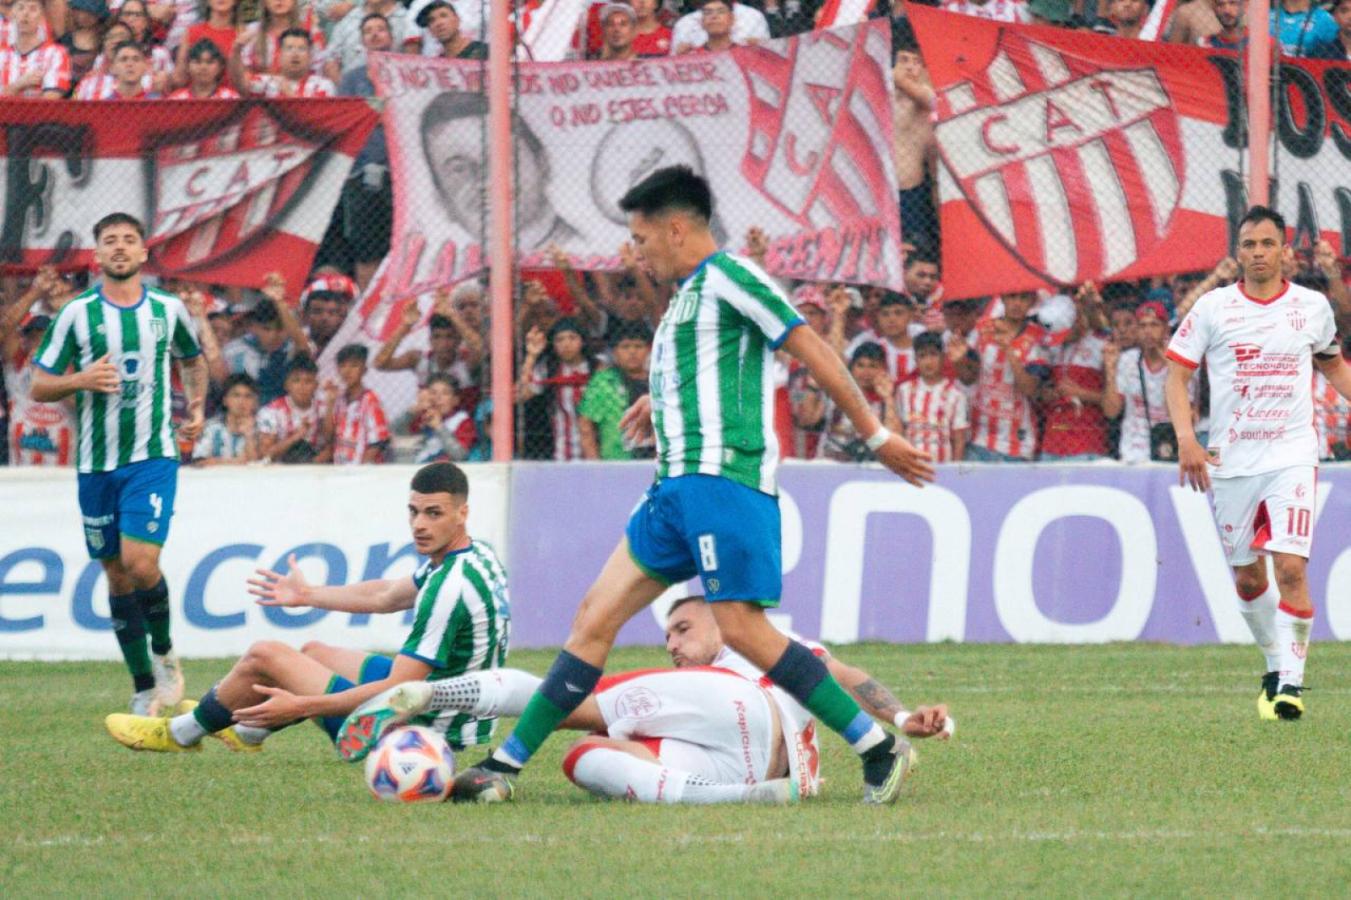 Los Andes 0-0 San Miguel, Primera División B